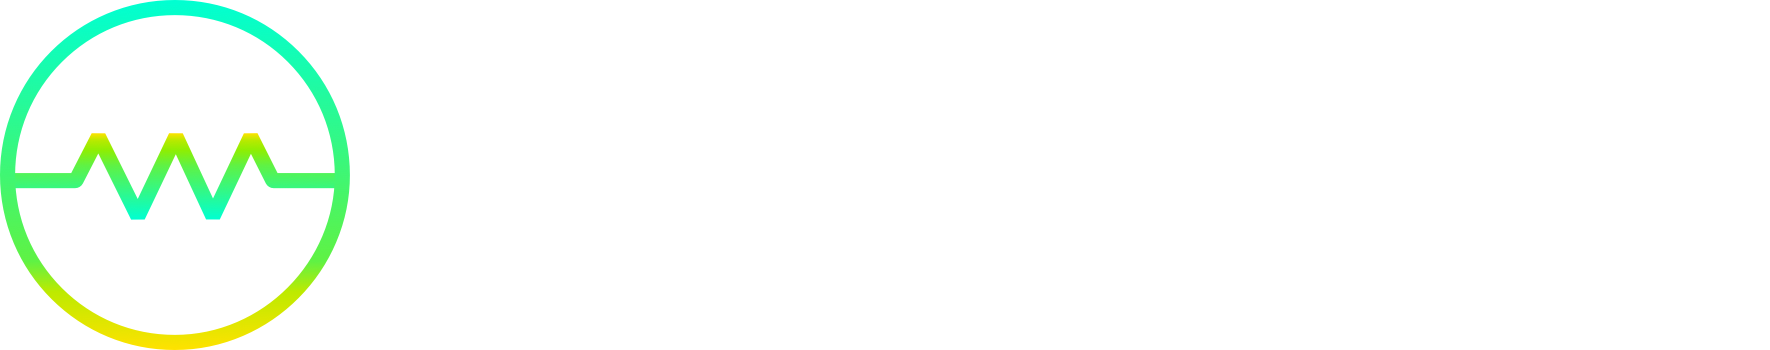 Wagerwire logo